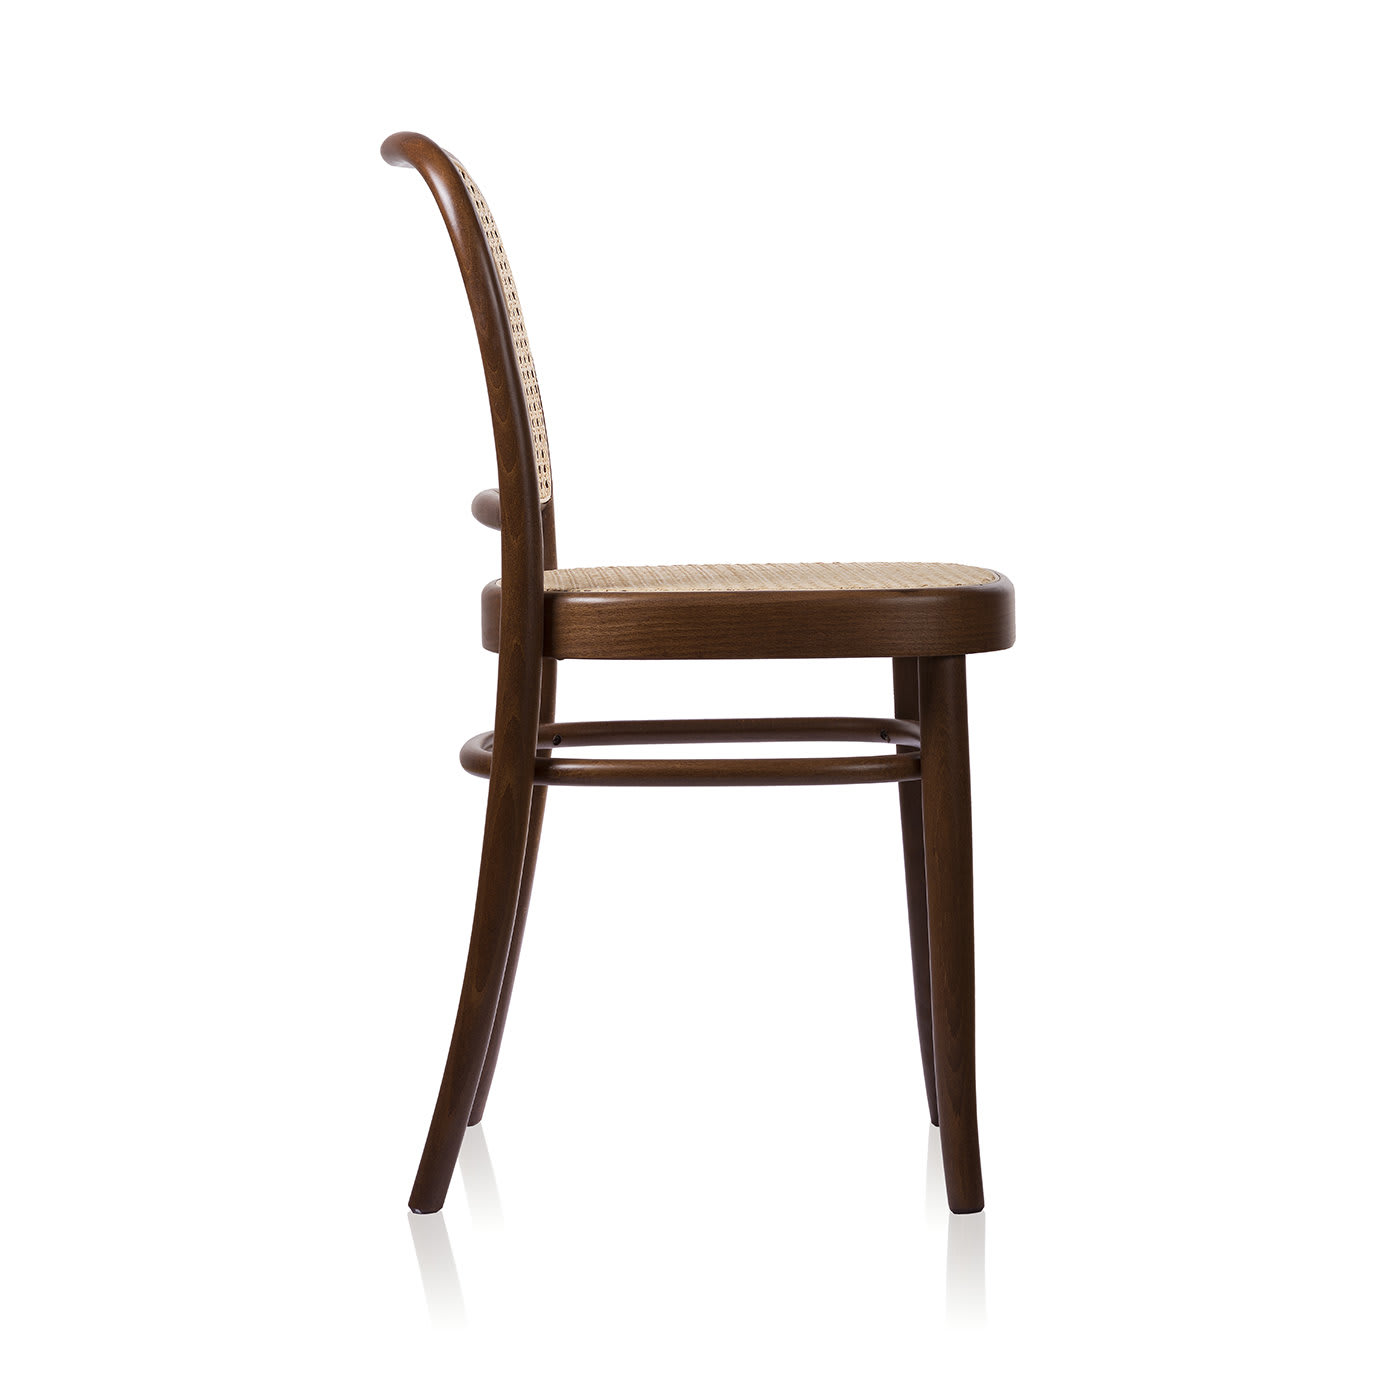 No. 811 Brown Chair by Josef Hoffmann - Gebrüder Thonet Vienna GmbH (GTV) – Wiener GTV Design